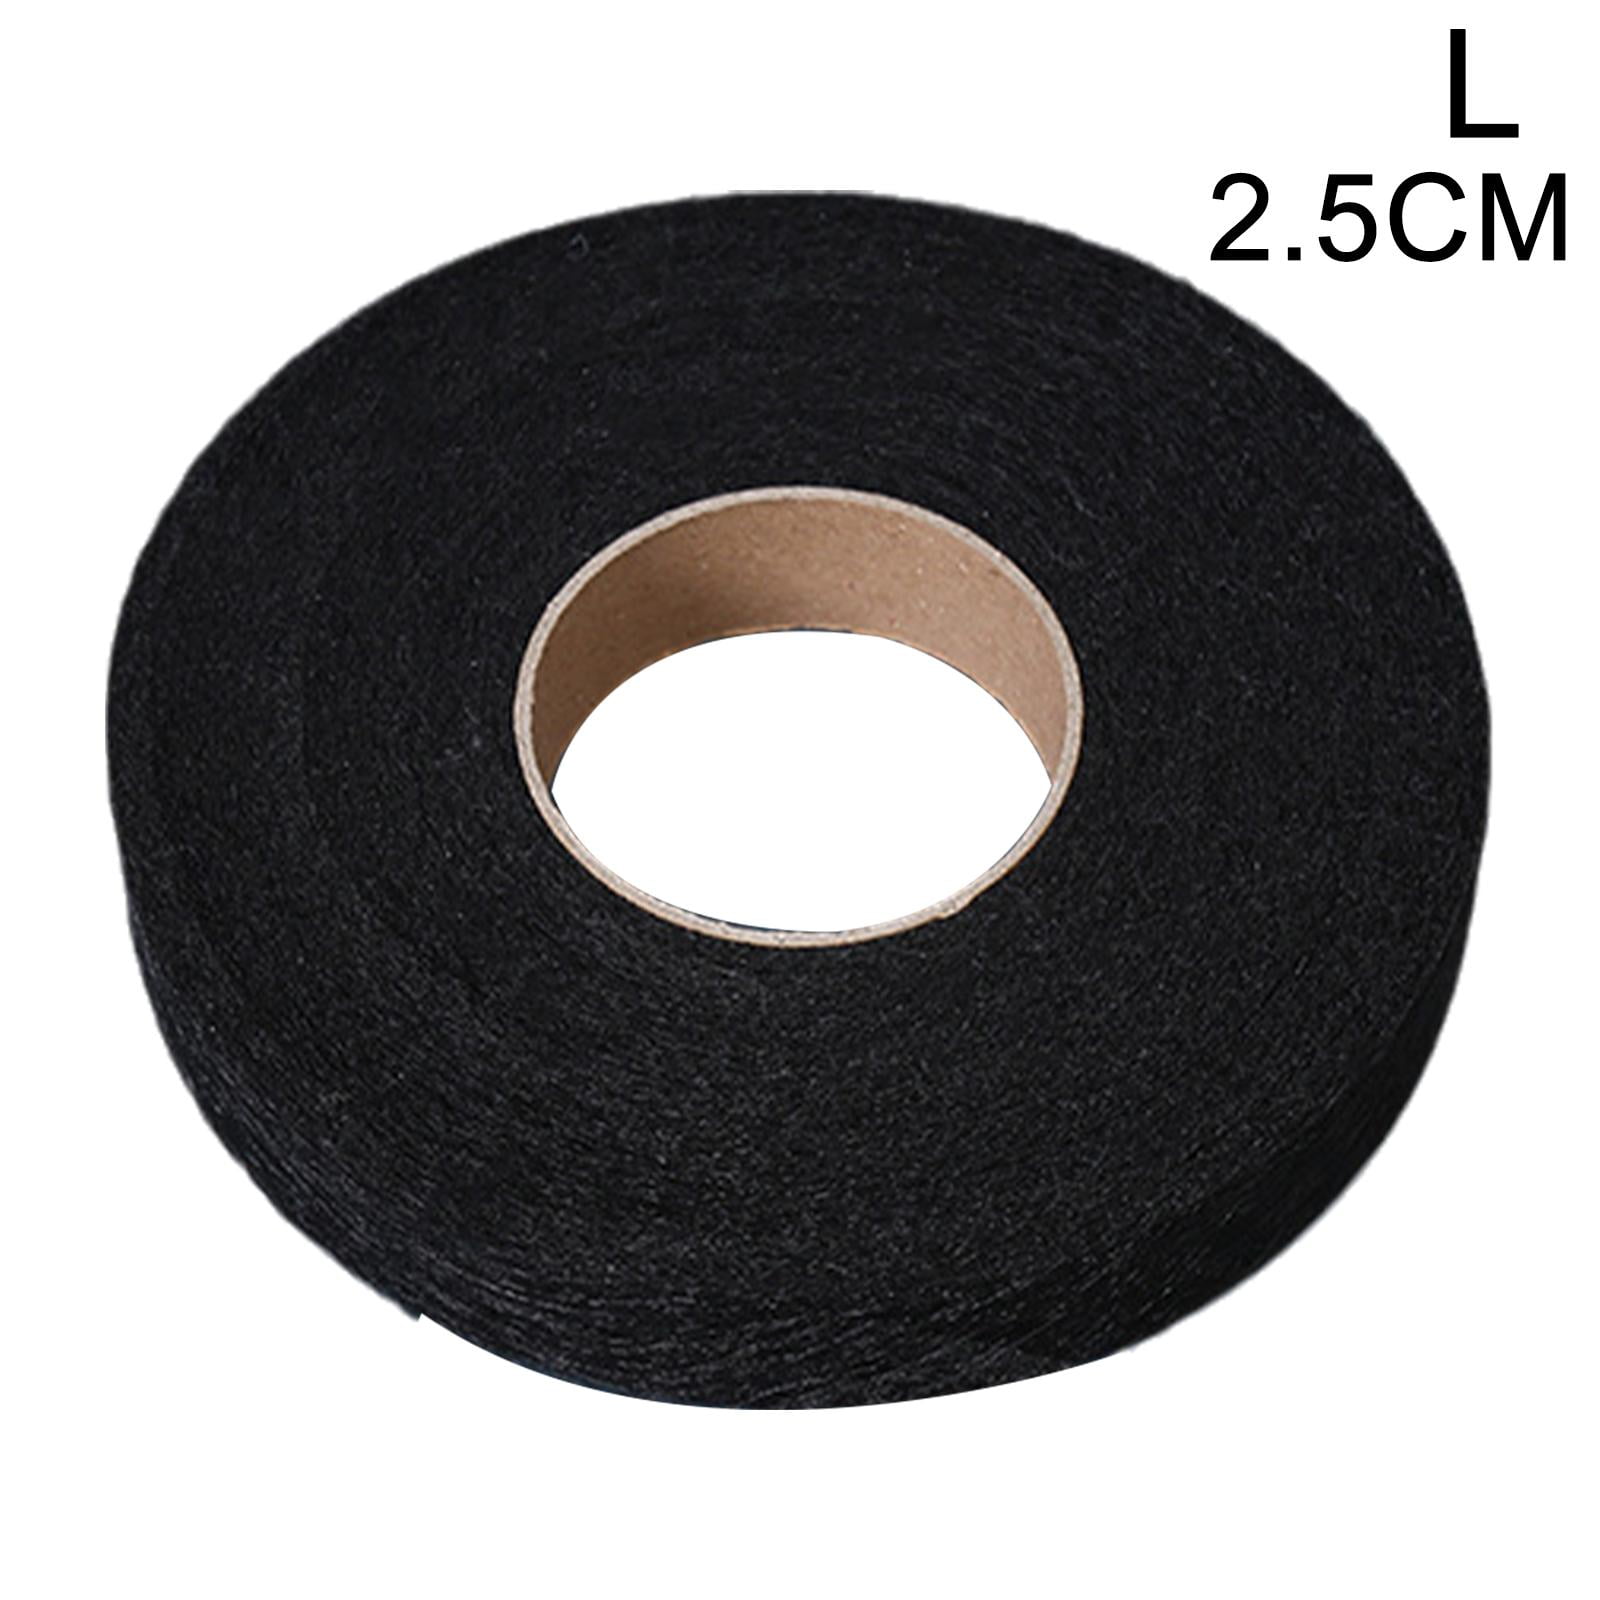 10M Washable Iron-On Hem Clothing Tape Adhesive Hem Tape Fabric Fusing Tape  Iron-on Hemming